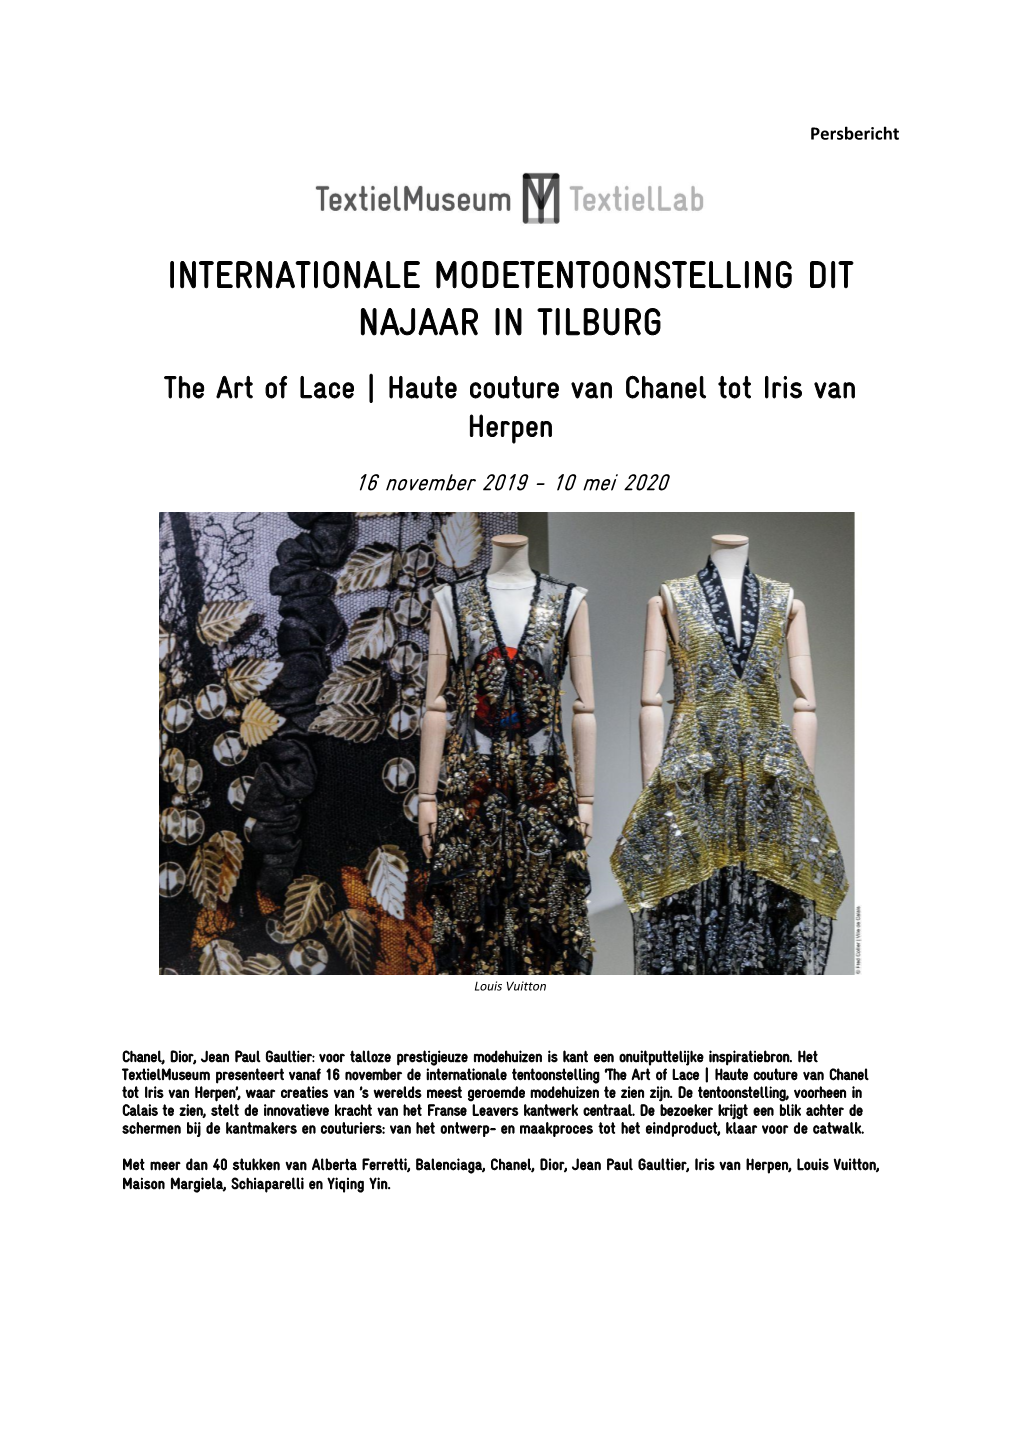 The Art of Lace | Haute Couture Van Chanel Tot Iris Van Herpen